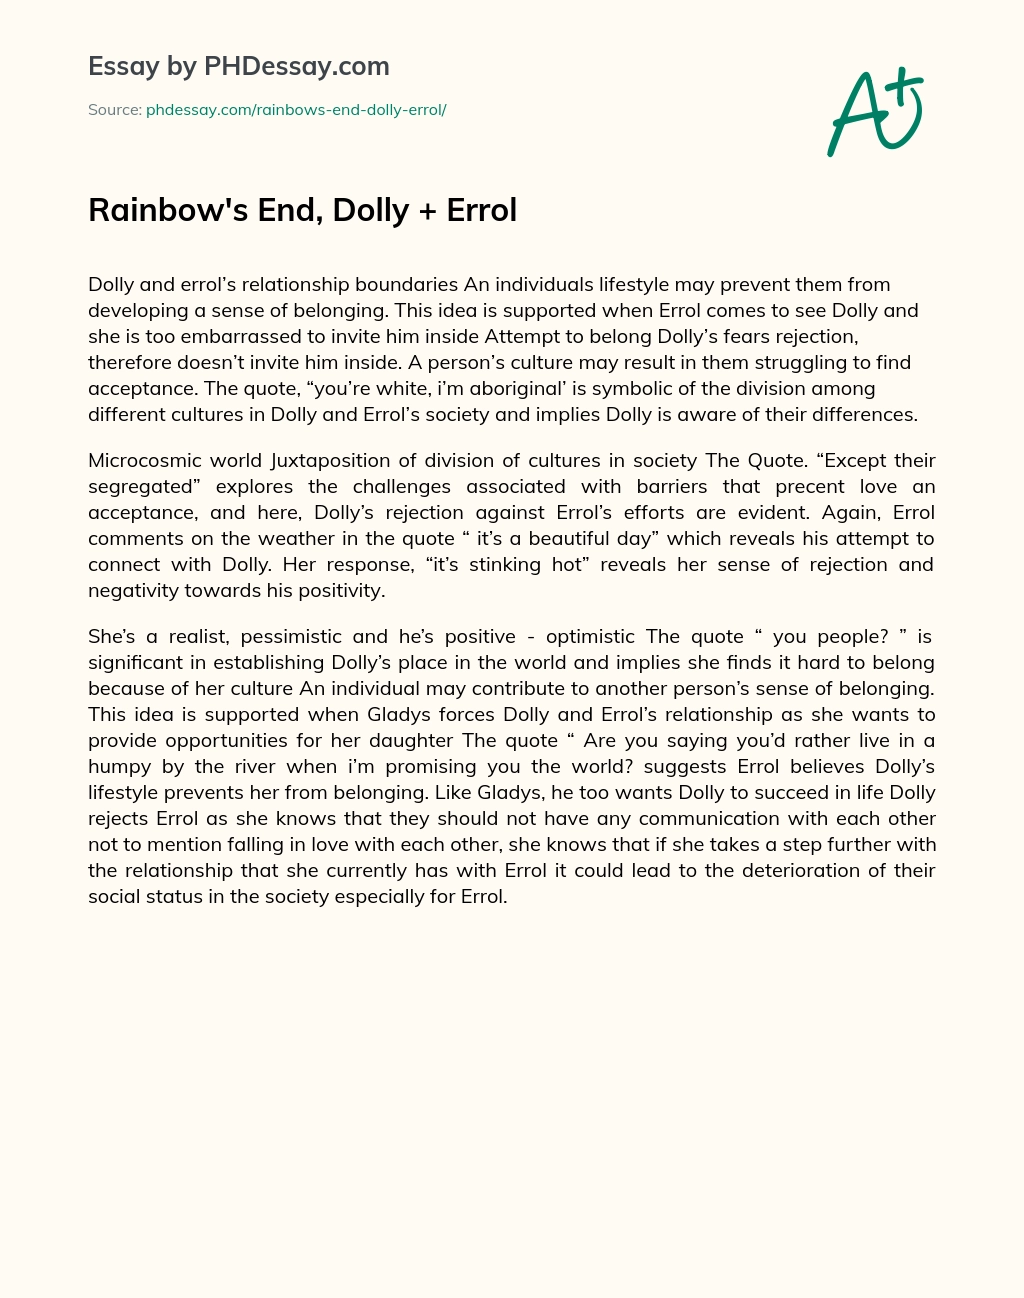 Rainbow’s End, Dolly + Errol essay